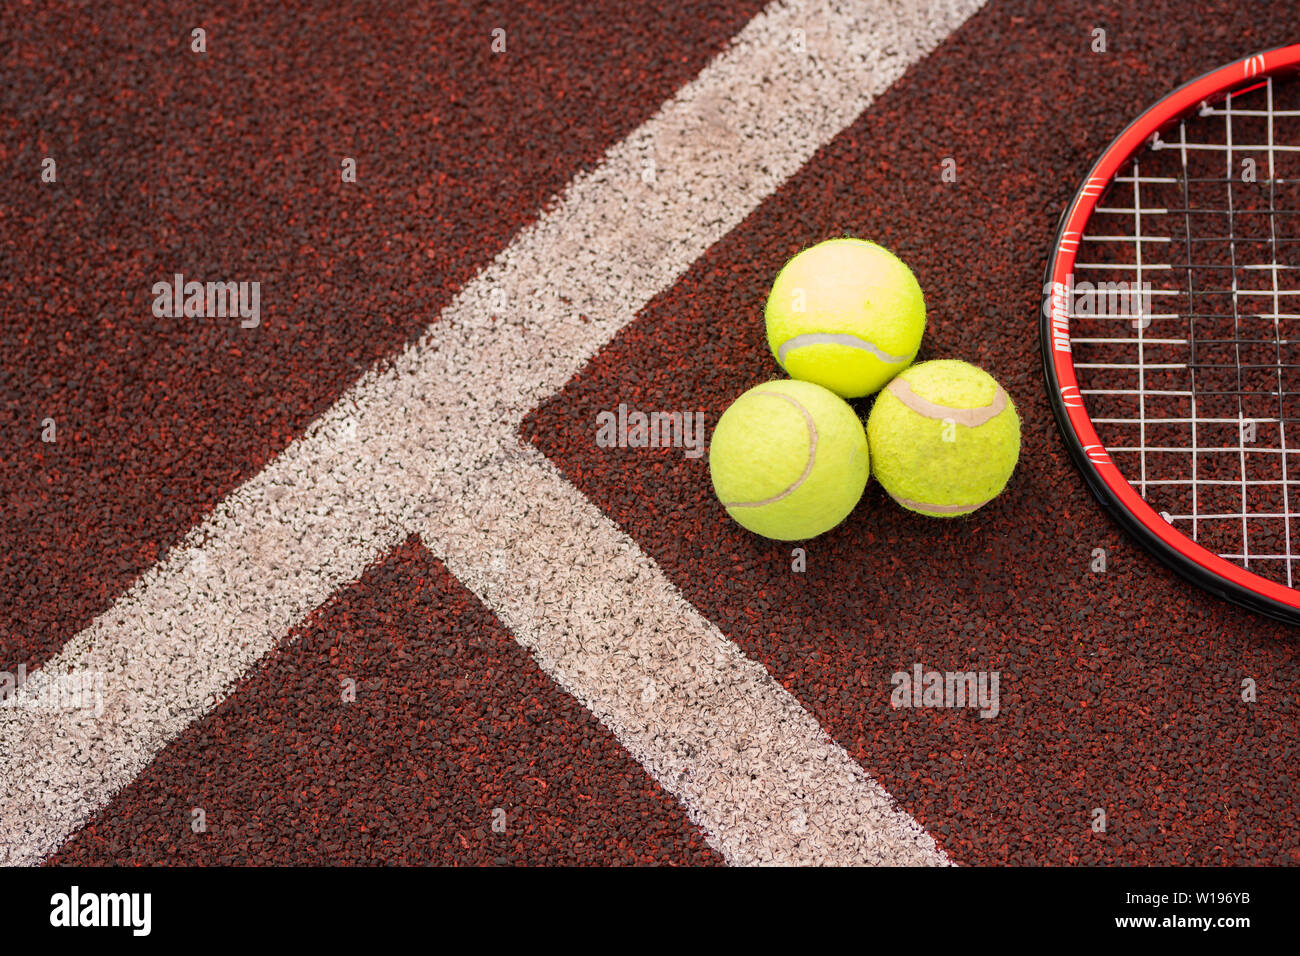 Vista superior del deporte para juego de tenis en el patio del estadio por dos líneas blancas Foto de stock